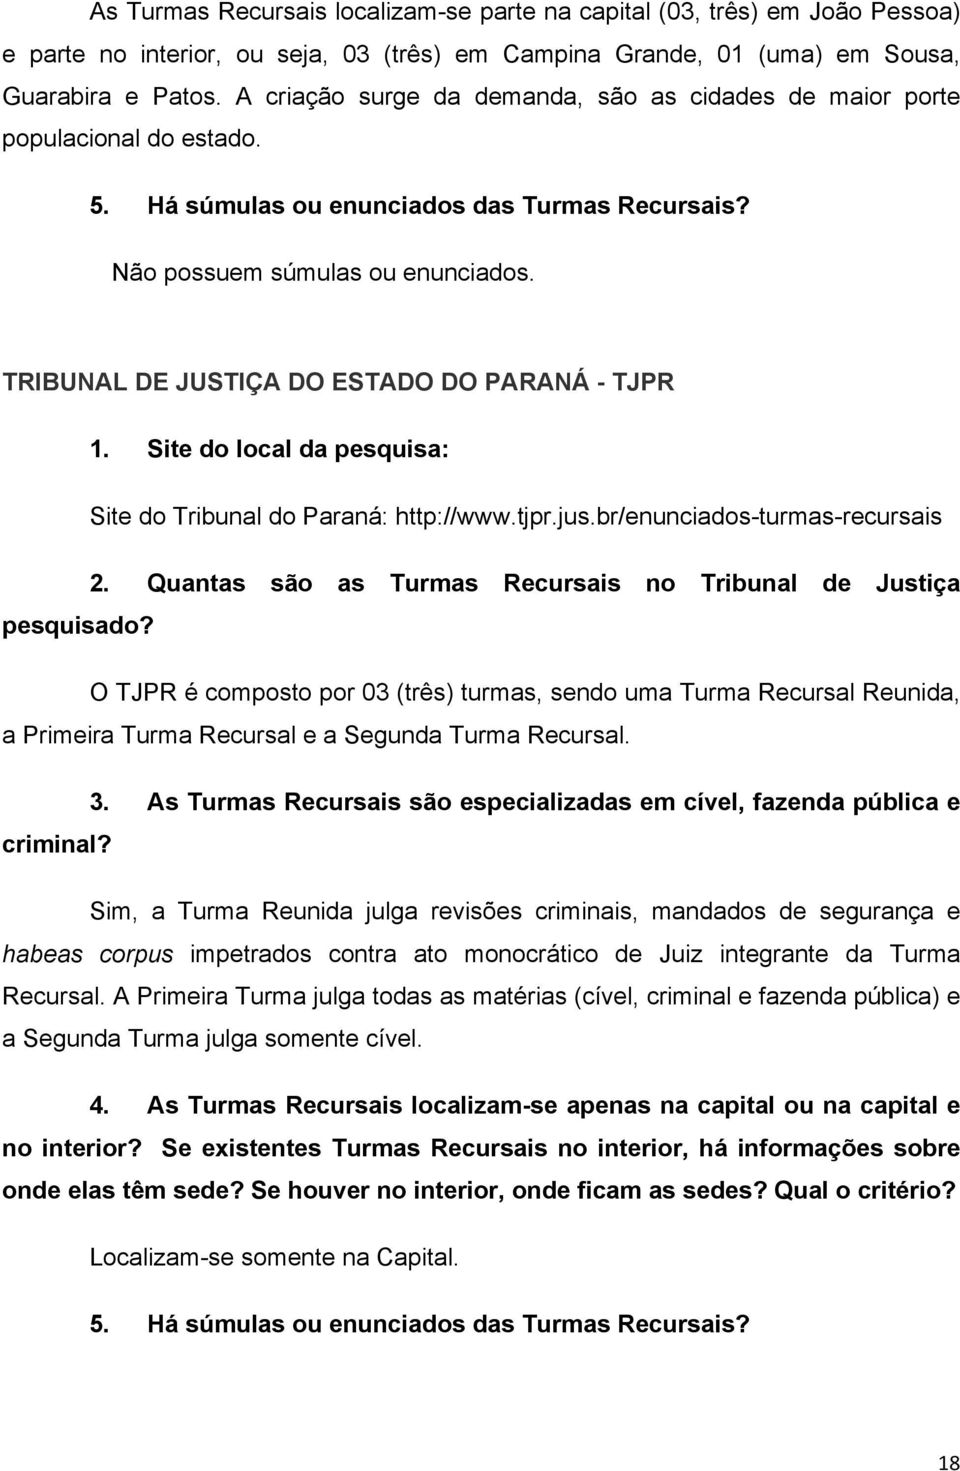 TRIBUNAL DE JUSTIÇA DO ESTADO DO PARANÁ - TJPR Site do Tribunal do Paraná: http://www.tjpr.jus.